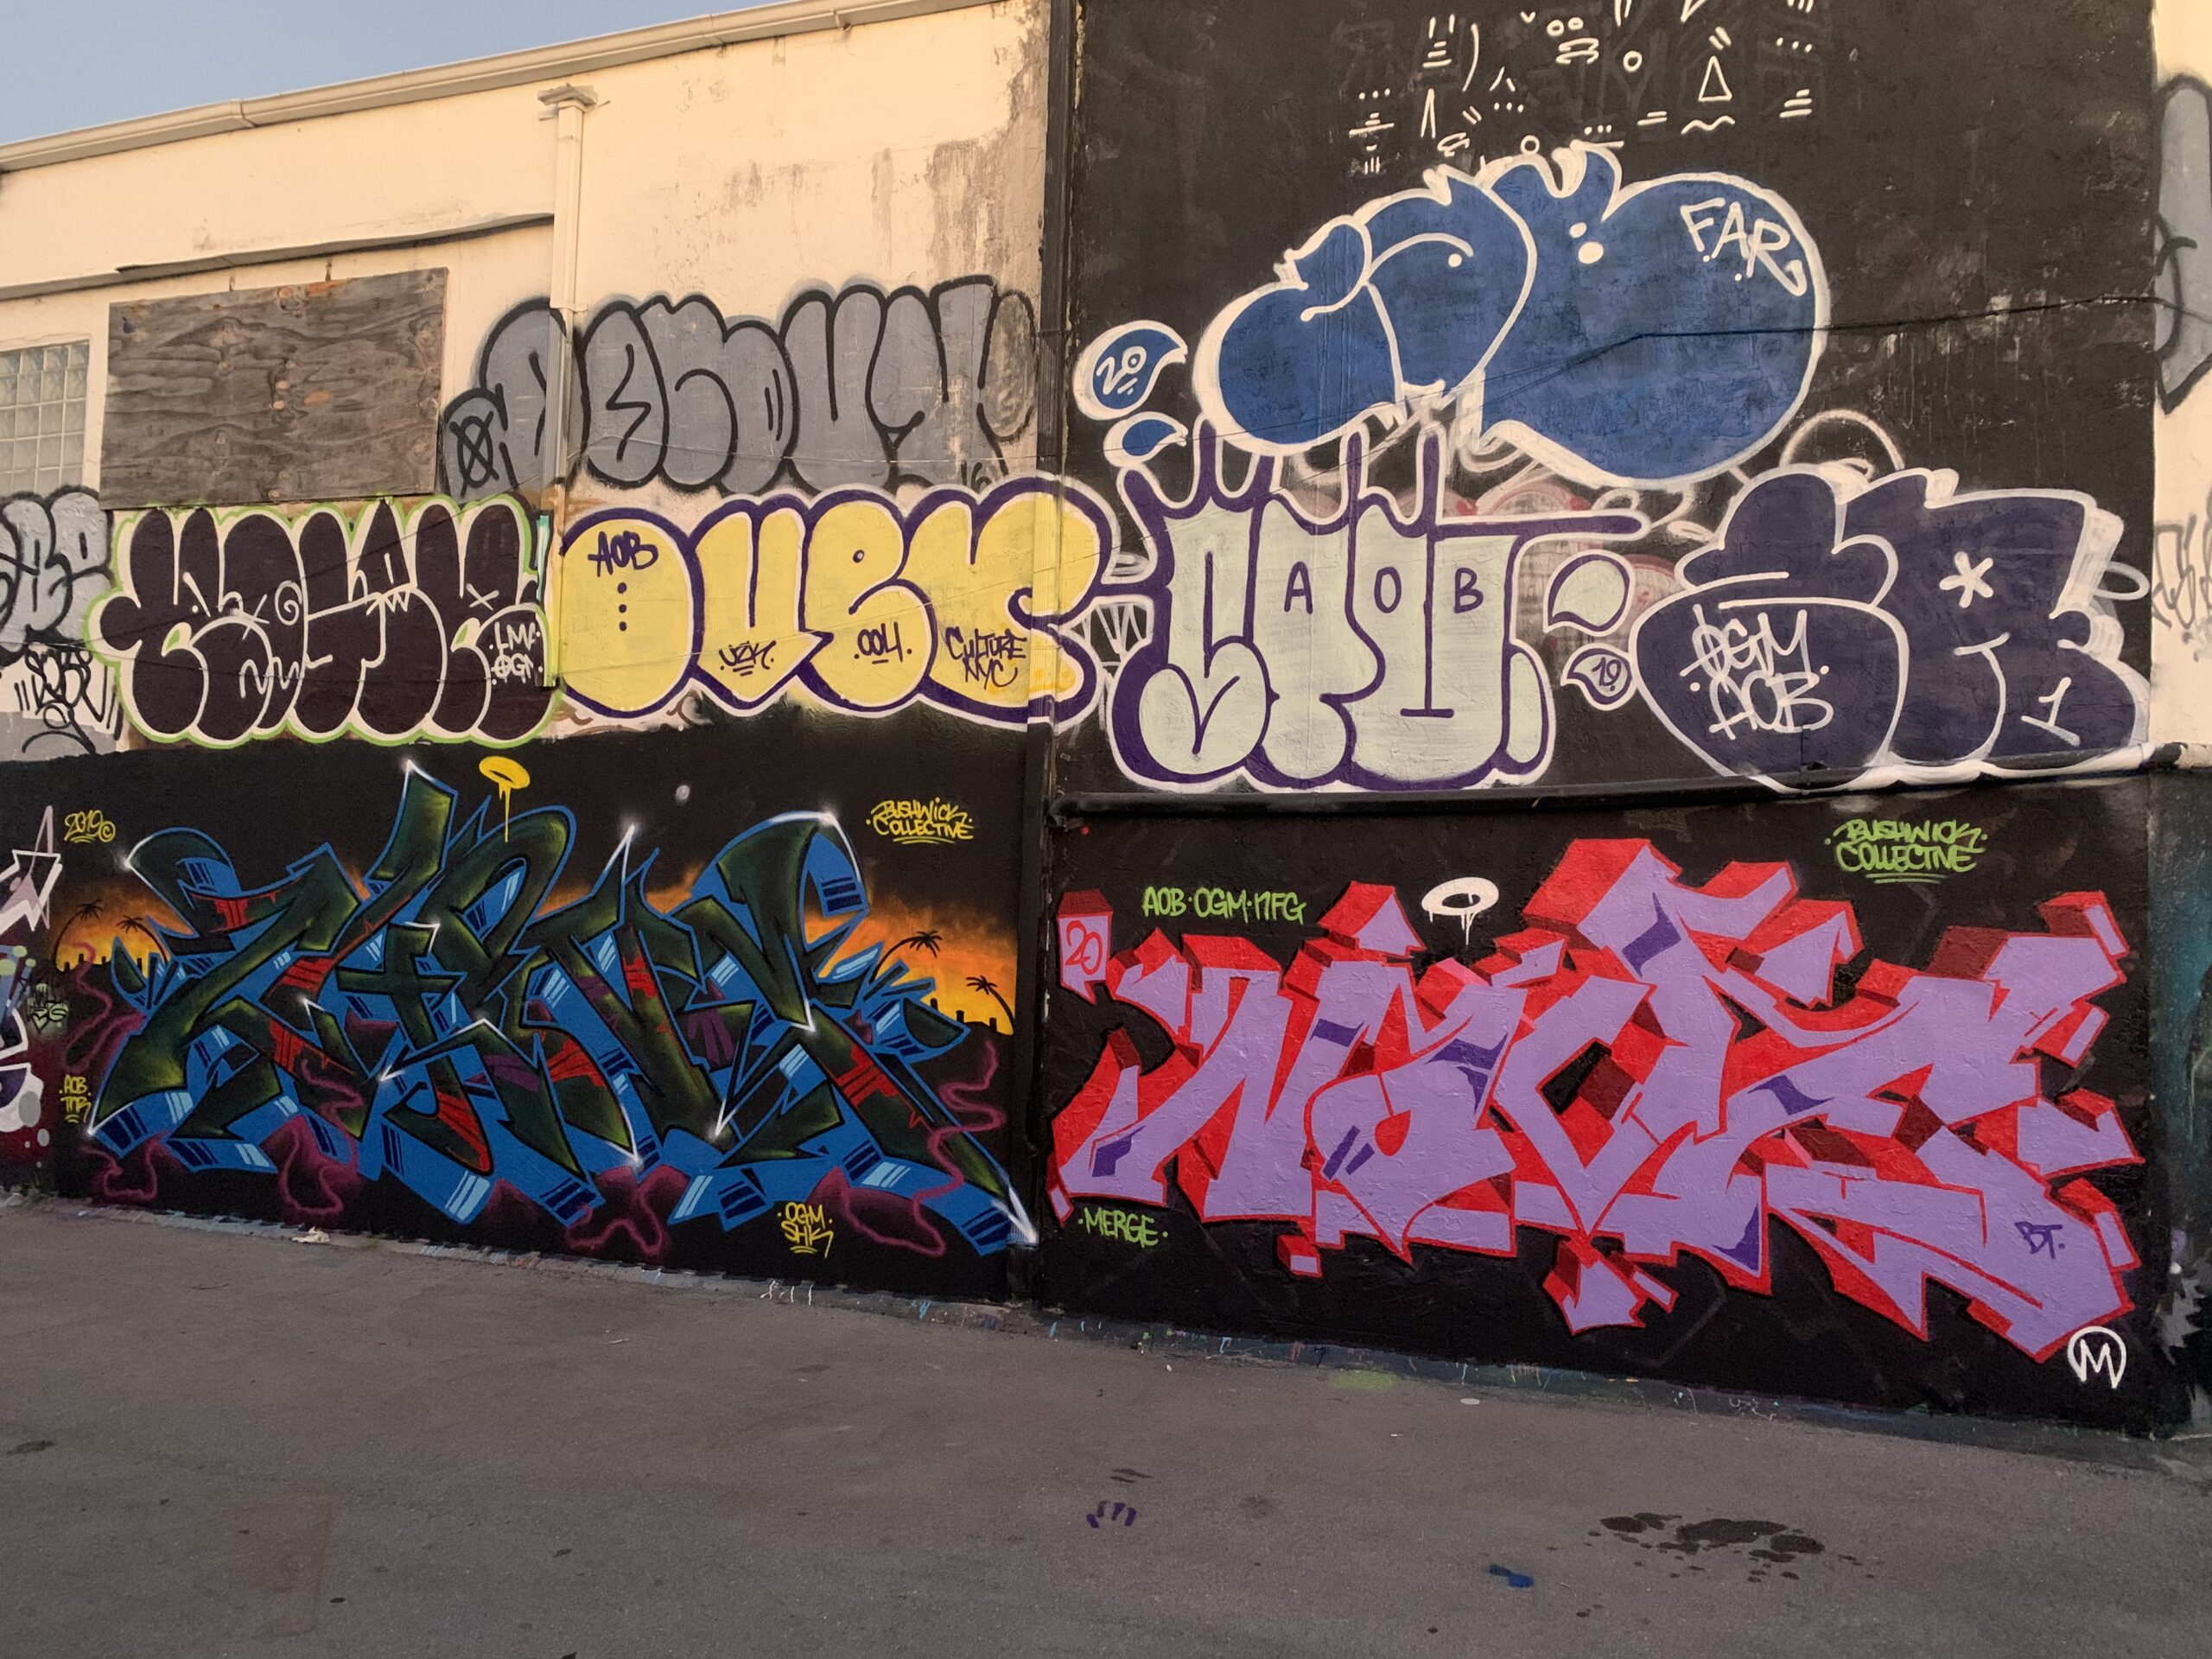 AOB in Miami, Wynwood Walls during Art Basel, Florida. 2019.